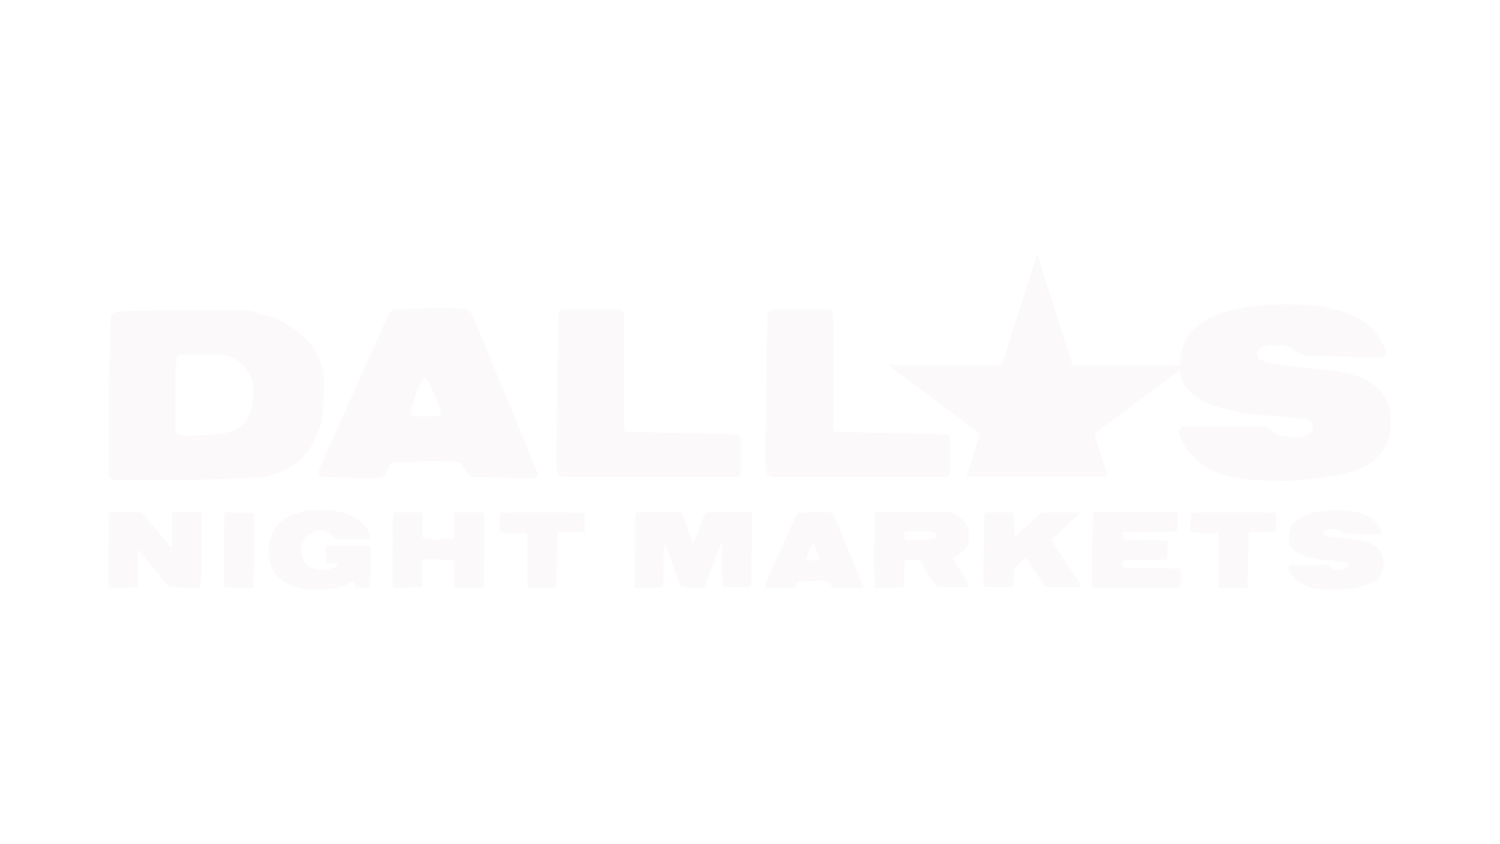 Dallas Night Markets